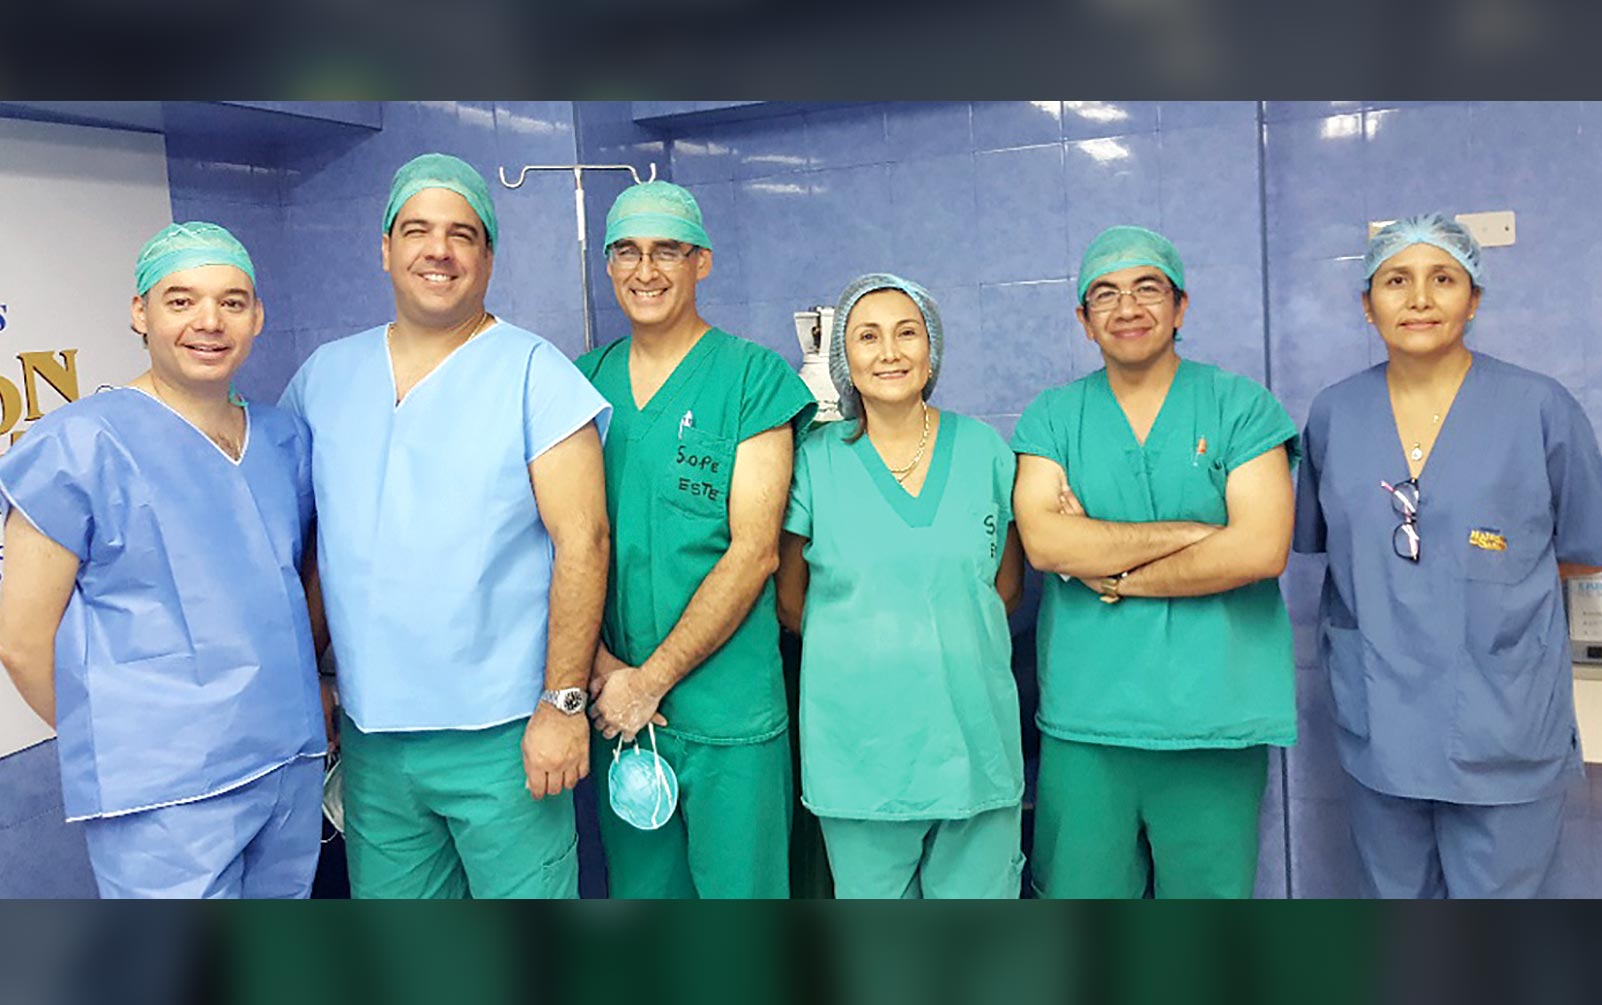 Bronchoscopy Ultrasound and Navigational Bronchoscopy Finally Arrive in Peru